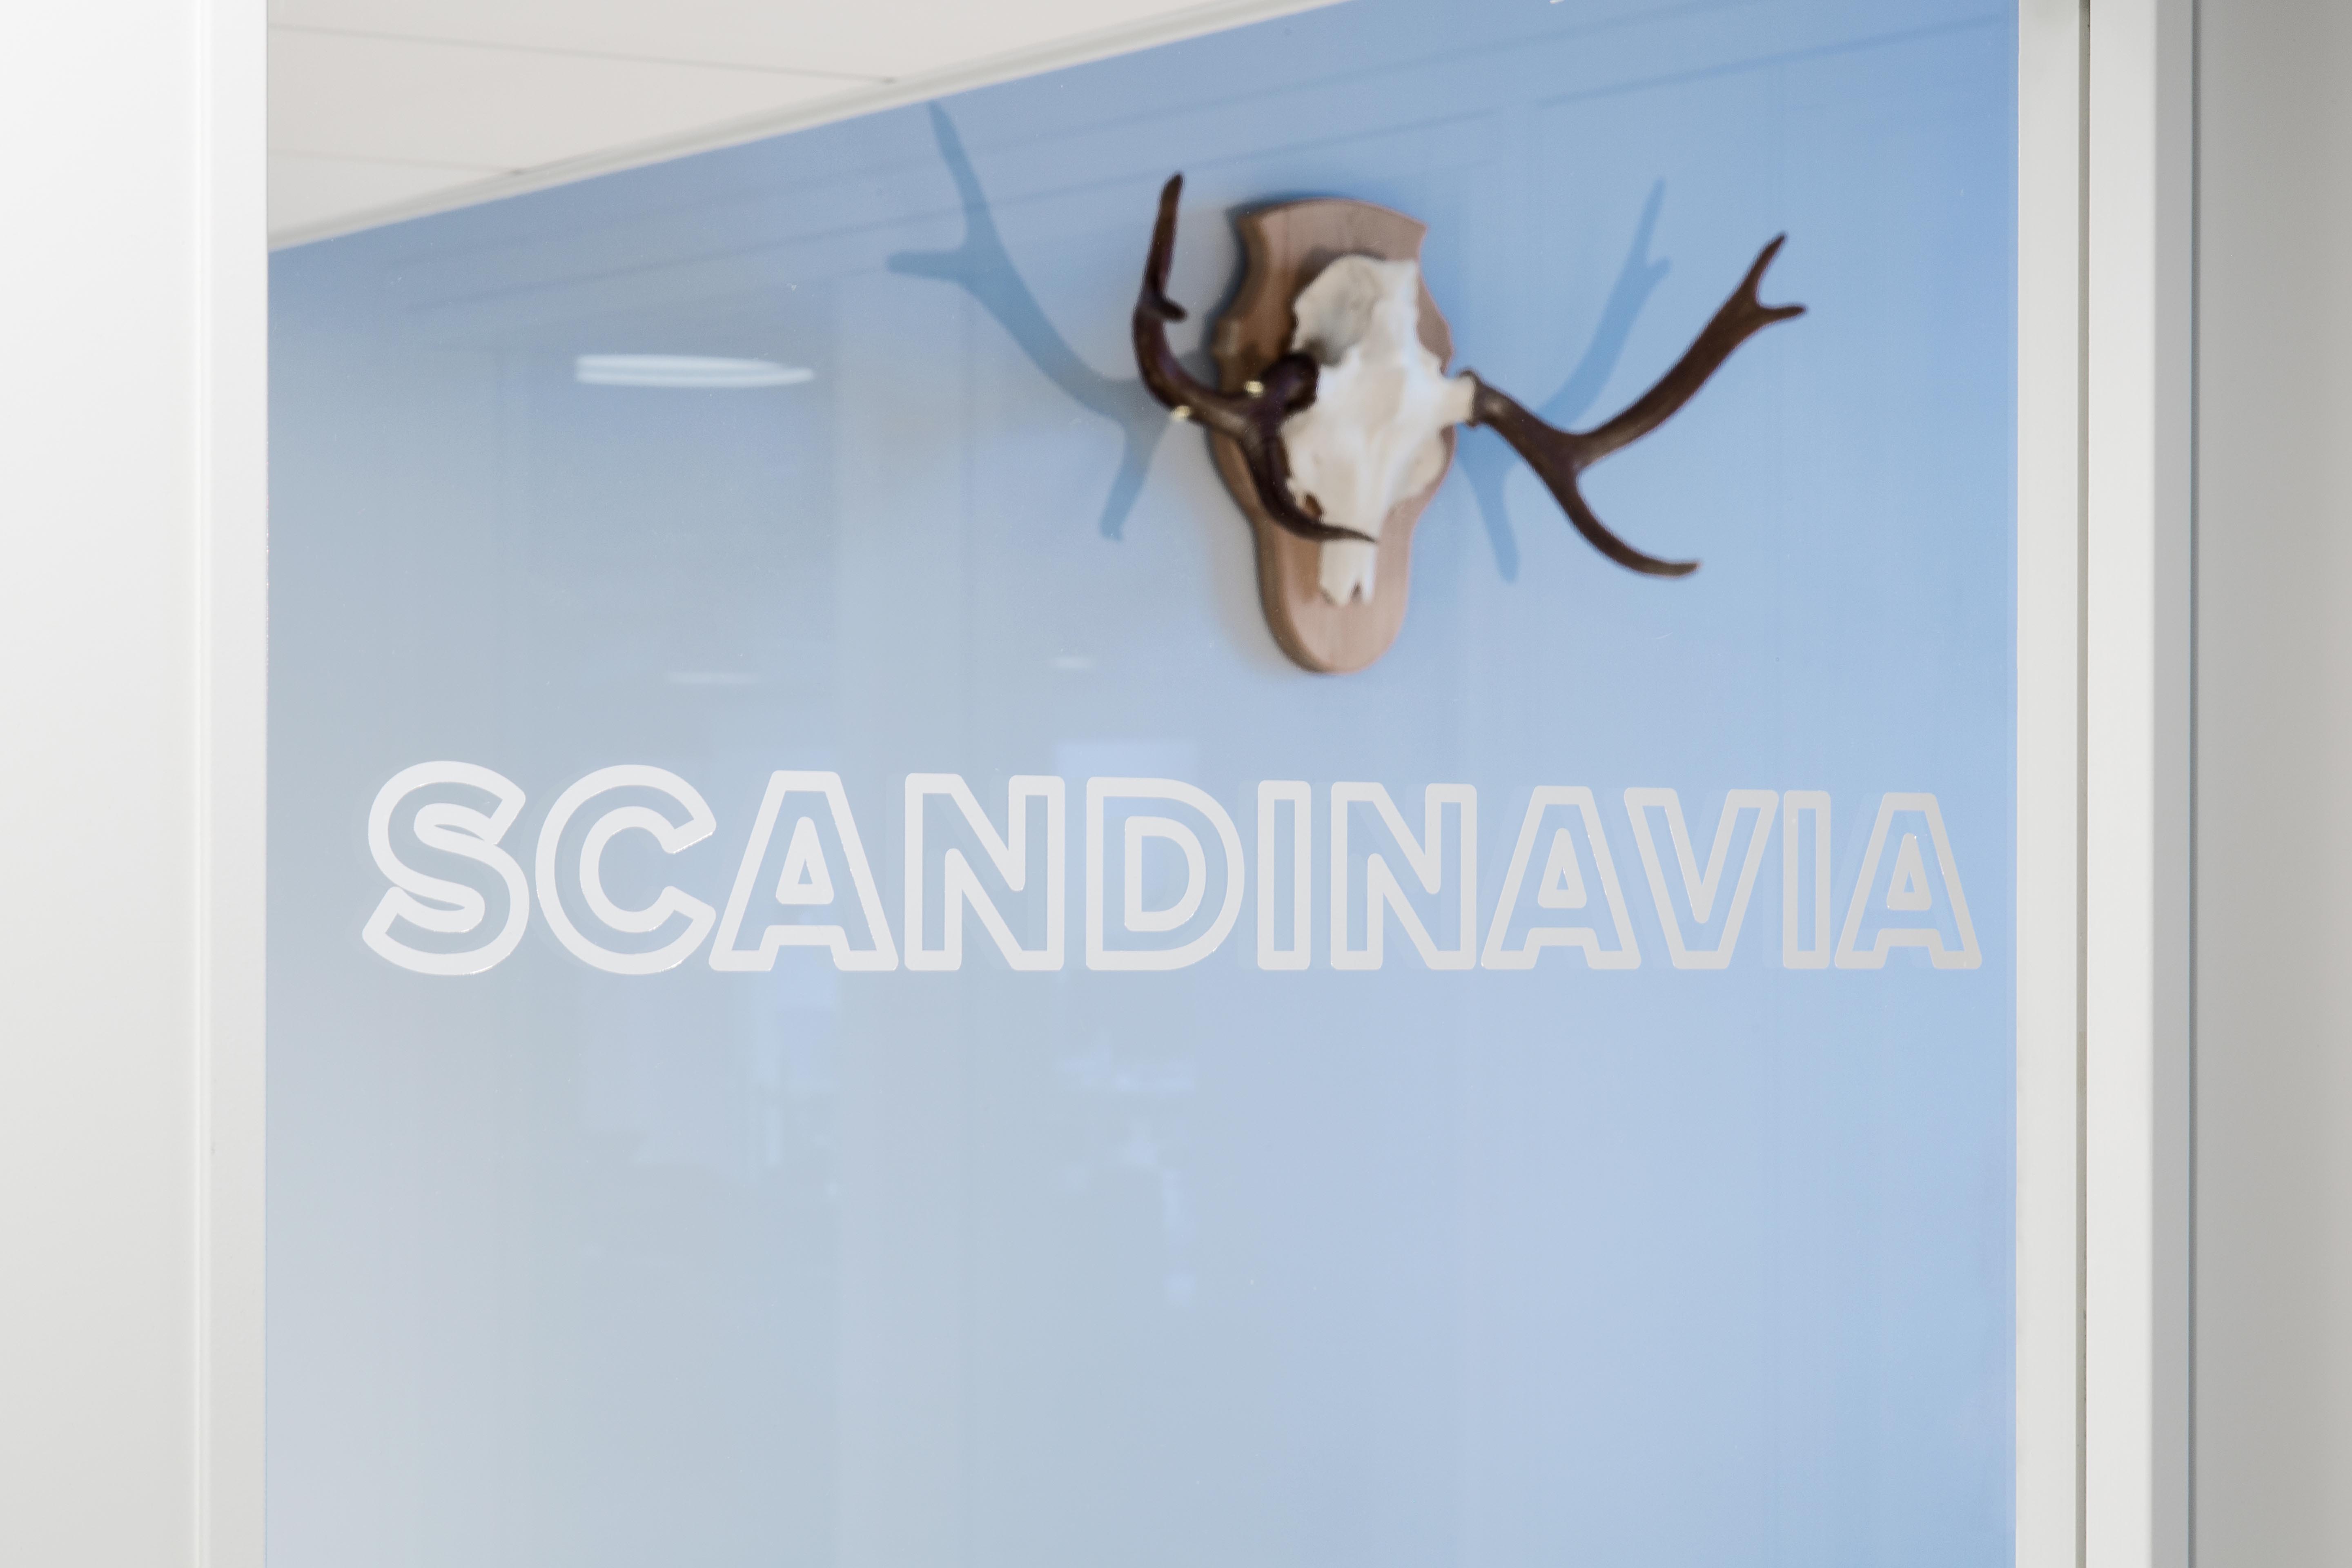 Bonusway office Scandinavian meeting room graphics